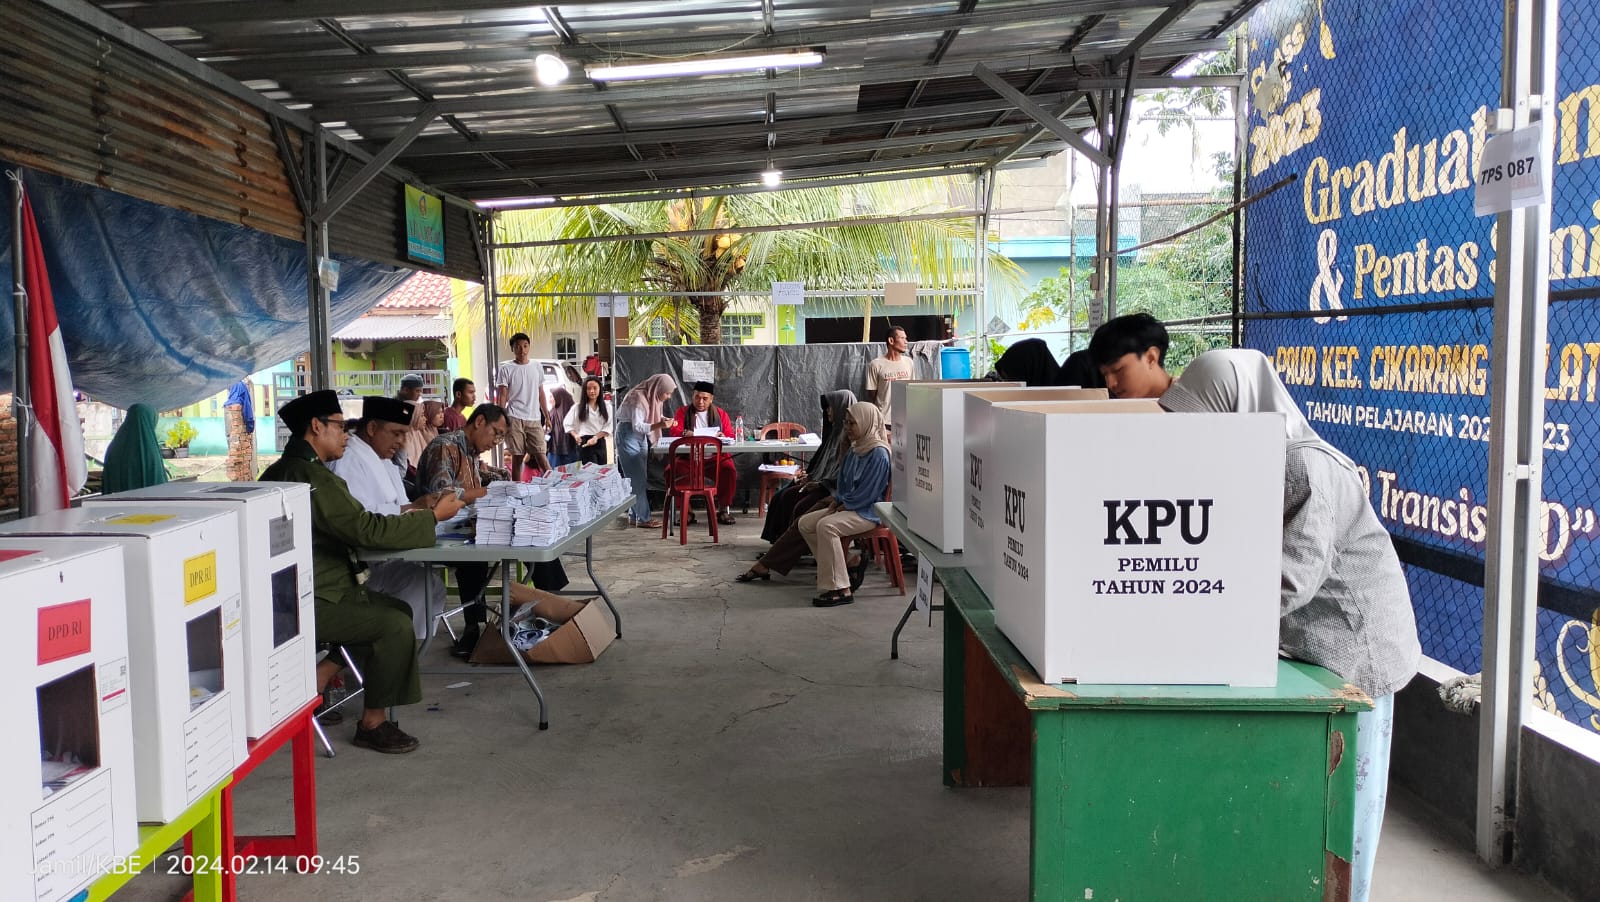 Partisipasi Masyarakat di Ciksel Kabupaten Bekasi pada Pemilu 2024 Mencapai 70 Persen 